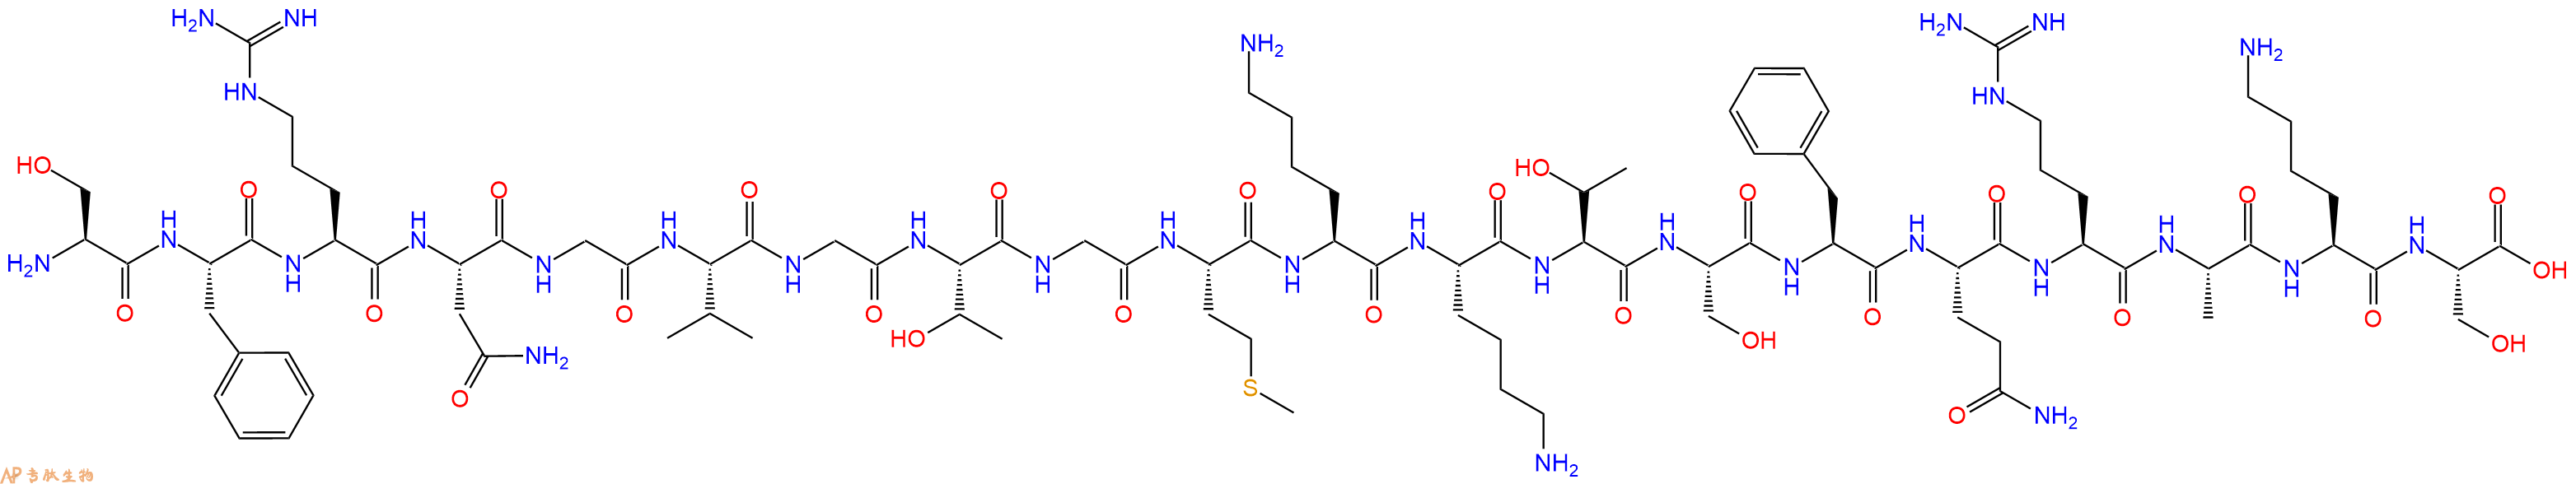 专肽生物产品神经肽S (人类)、 Neuro peptide S (human)412938-67-1